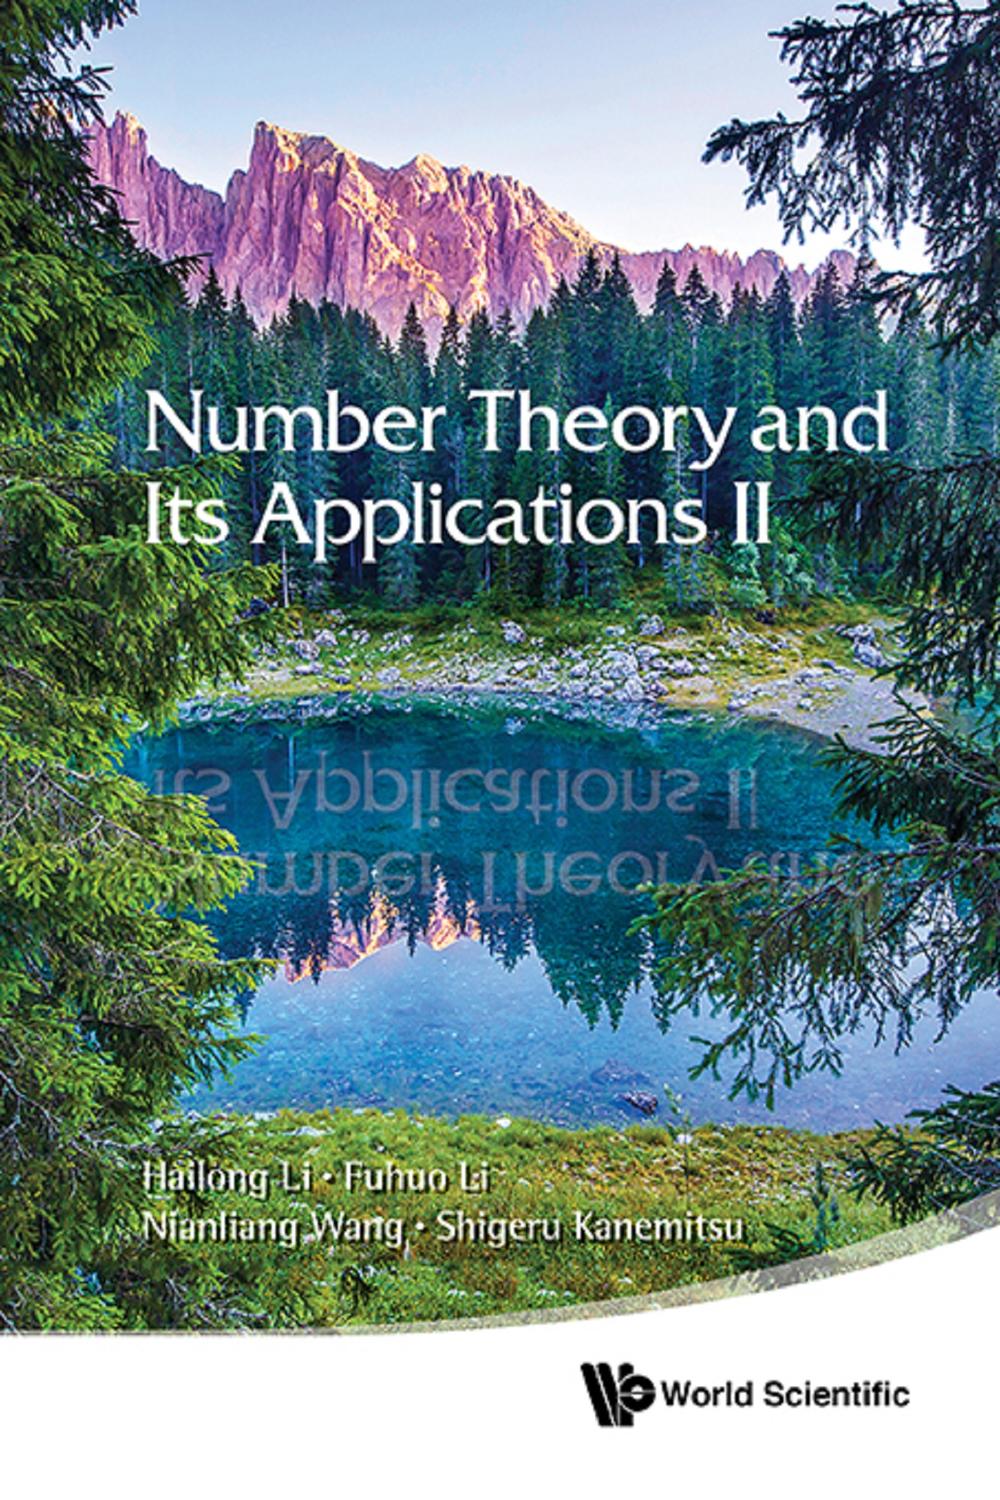 Number Theory and Its Applications II - Hailong Li, Fuhuo Li;Nianliang Wang;Shigeru Kanemitsu,,